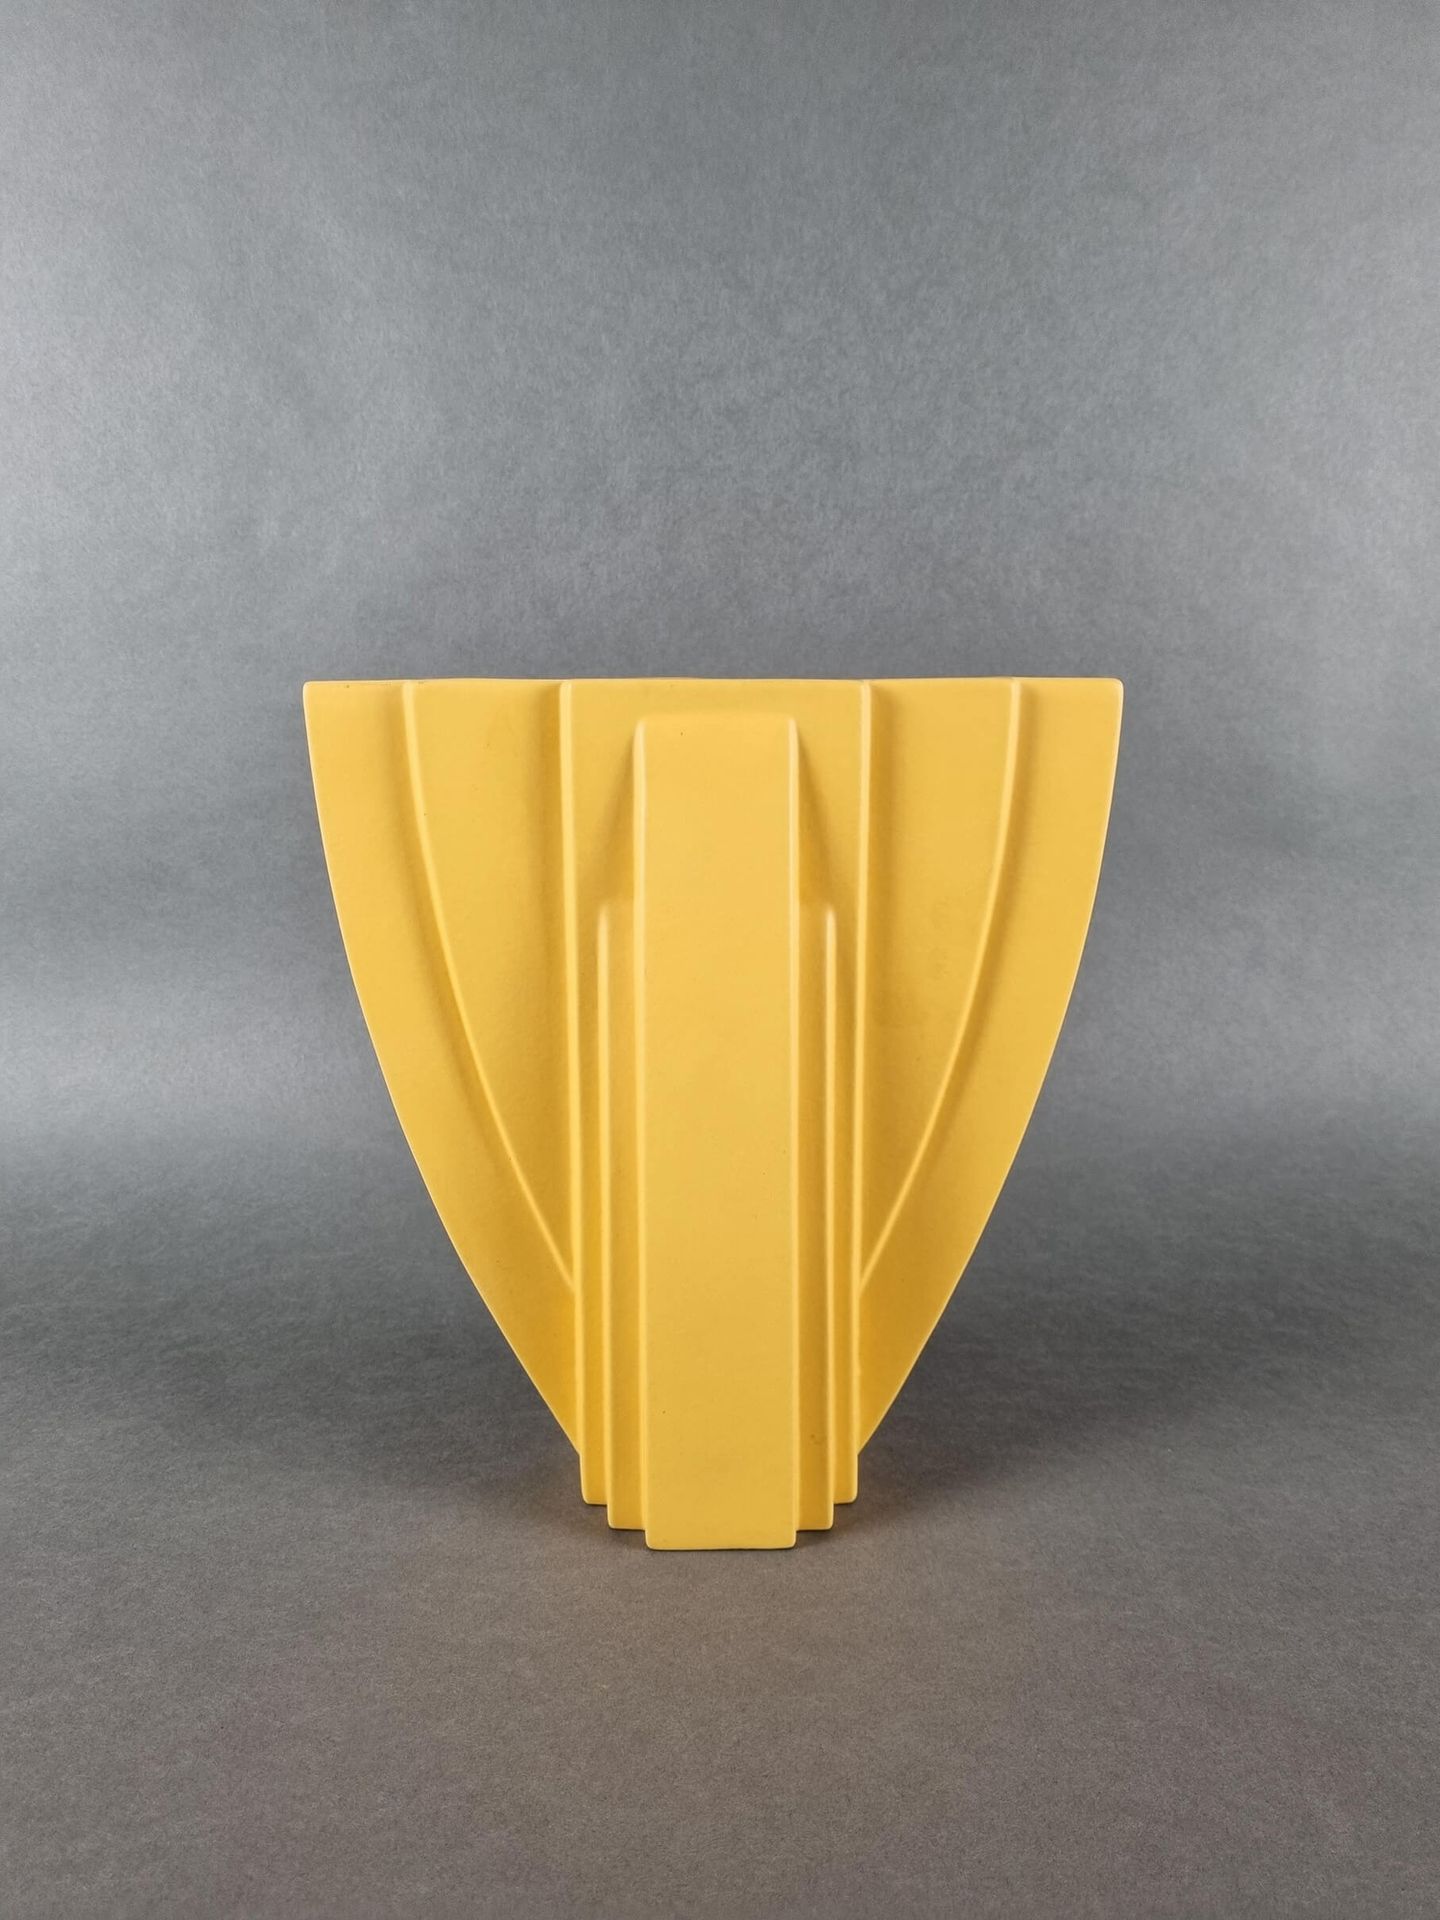 DUMAS Claude (1955) 签名为Claude Dumas的陶瓷花瓶。高：29厘米